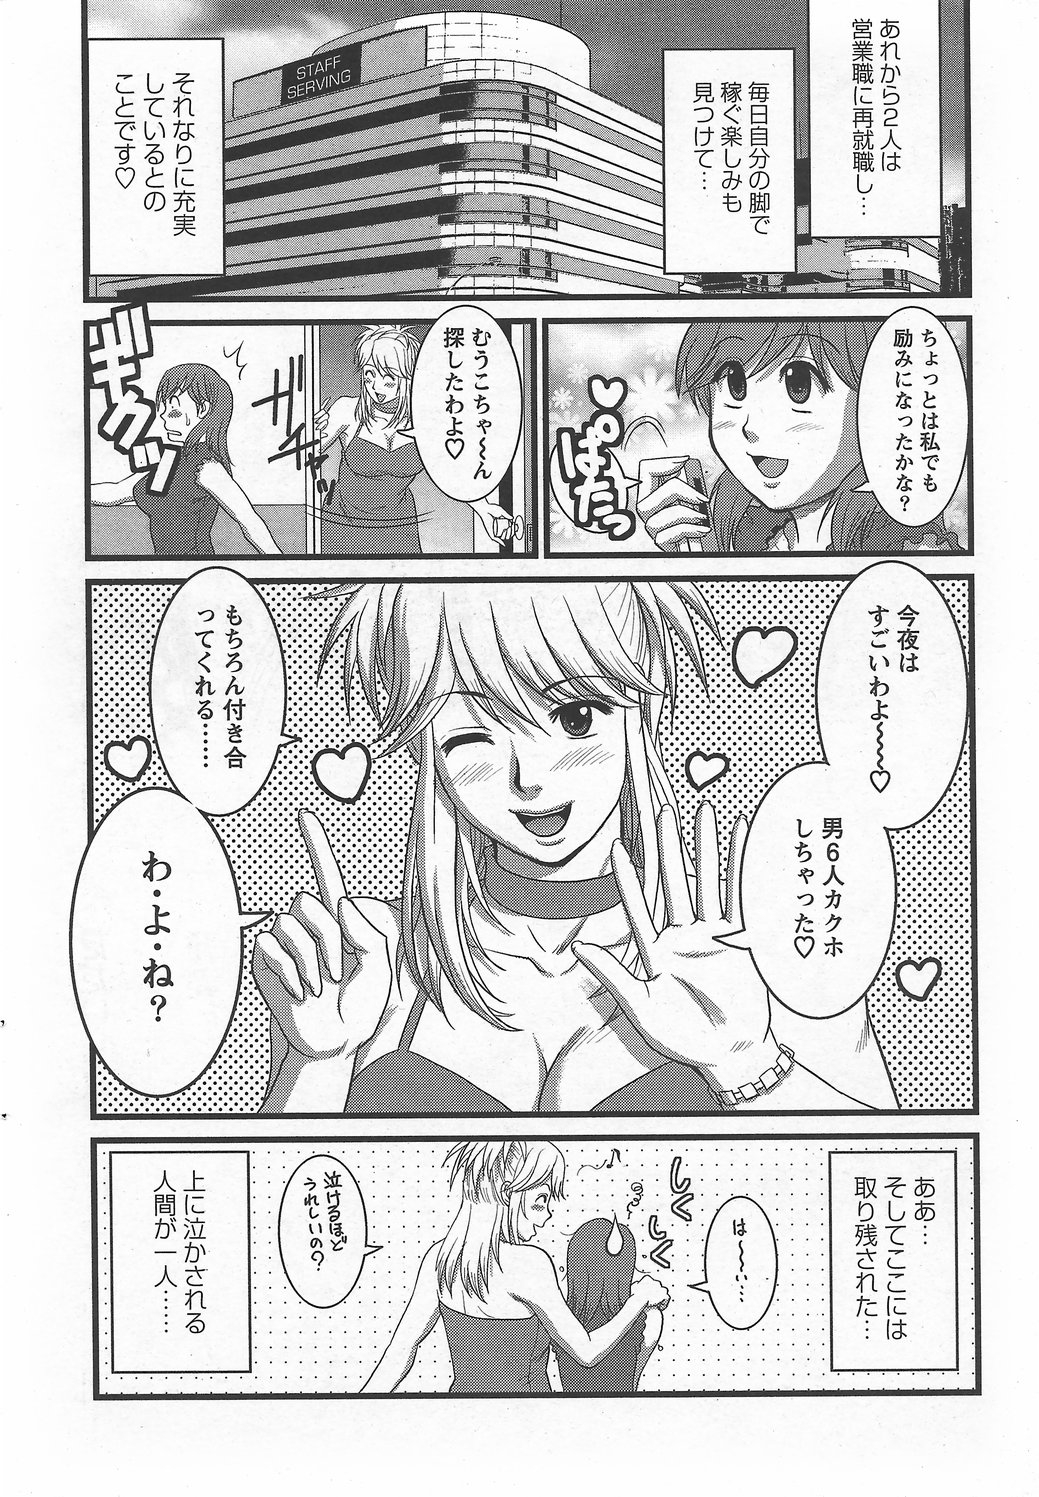 Haken no Muuko-san 6 [Saigado] page 21 full